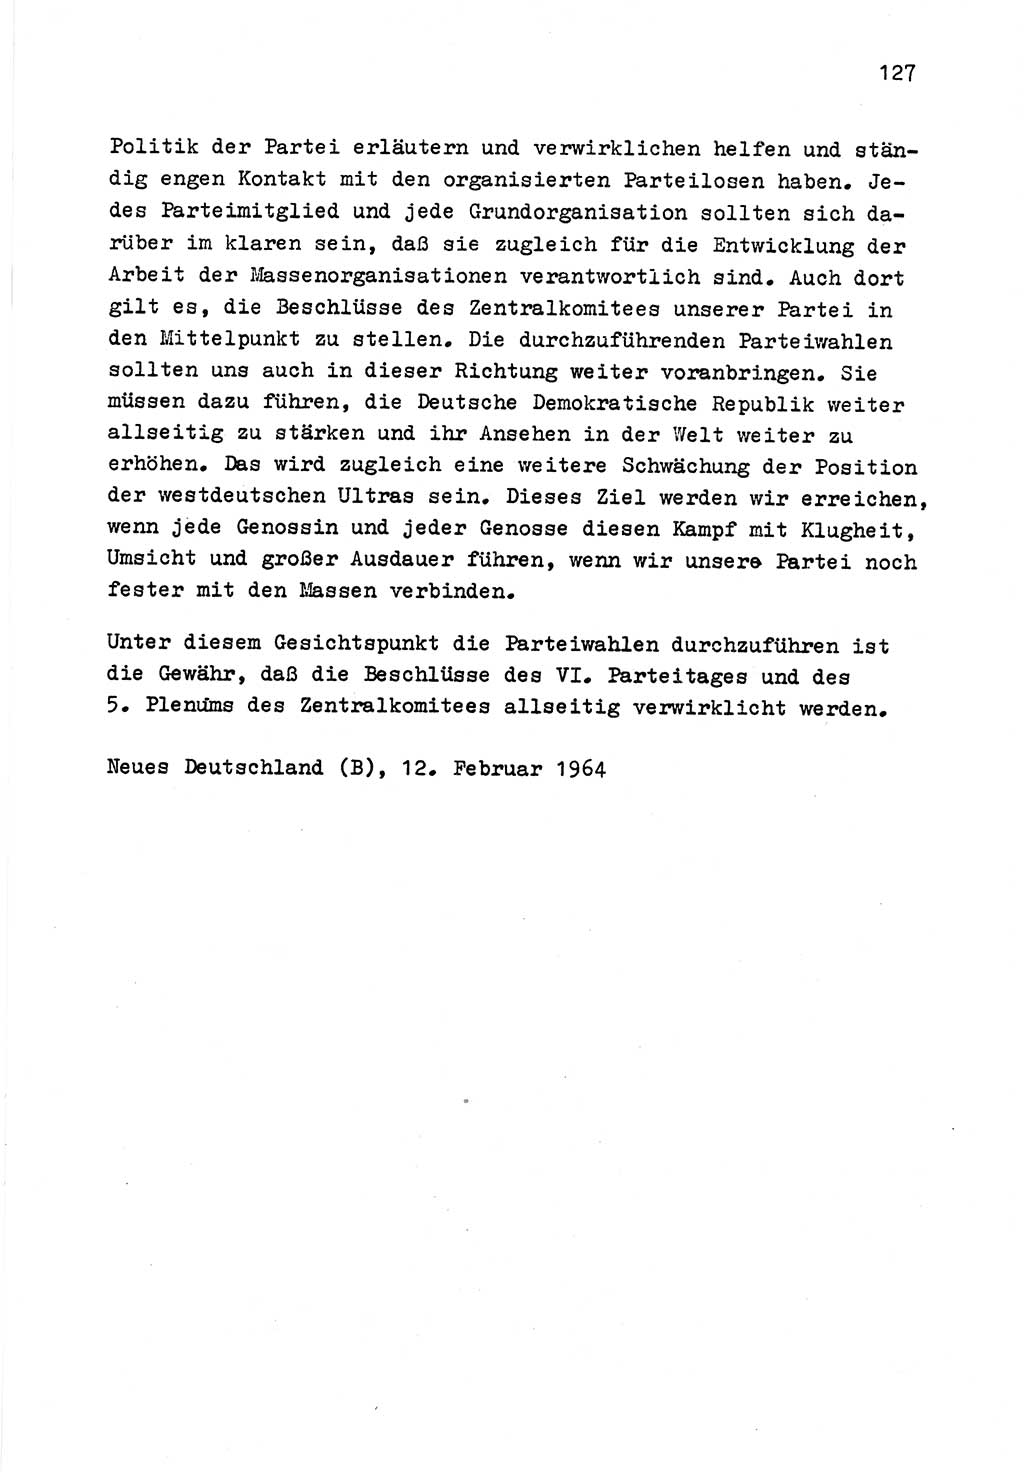 Zu Fragen der Parteiarbeit [Sozialistische Einheitspartei Deutschlands (SED) Deutsche Demokratische Republik (DDR)] 1979, Seite 127 (Fr. PA SED DDR 1979, S. 127)